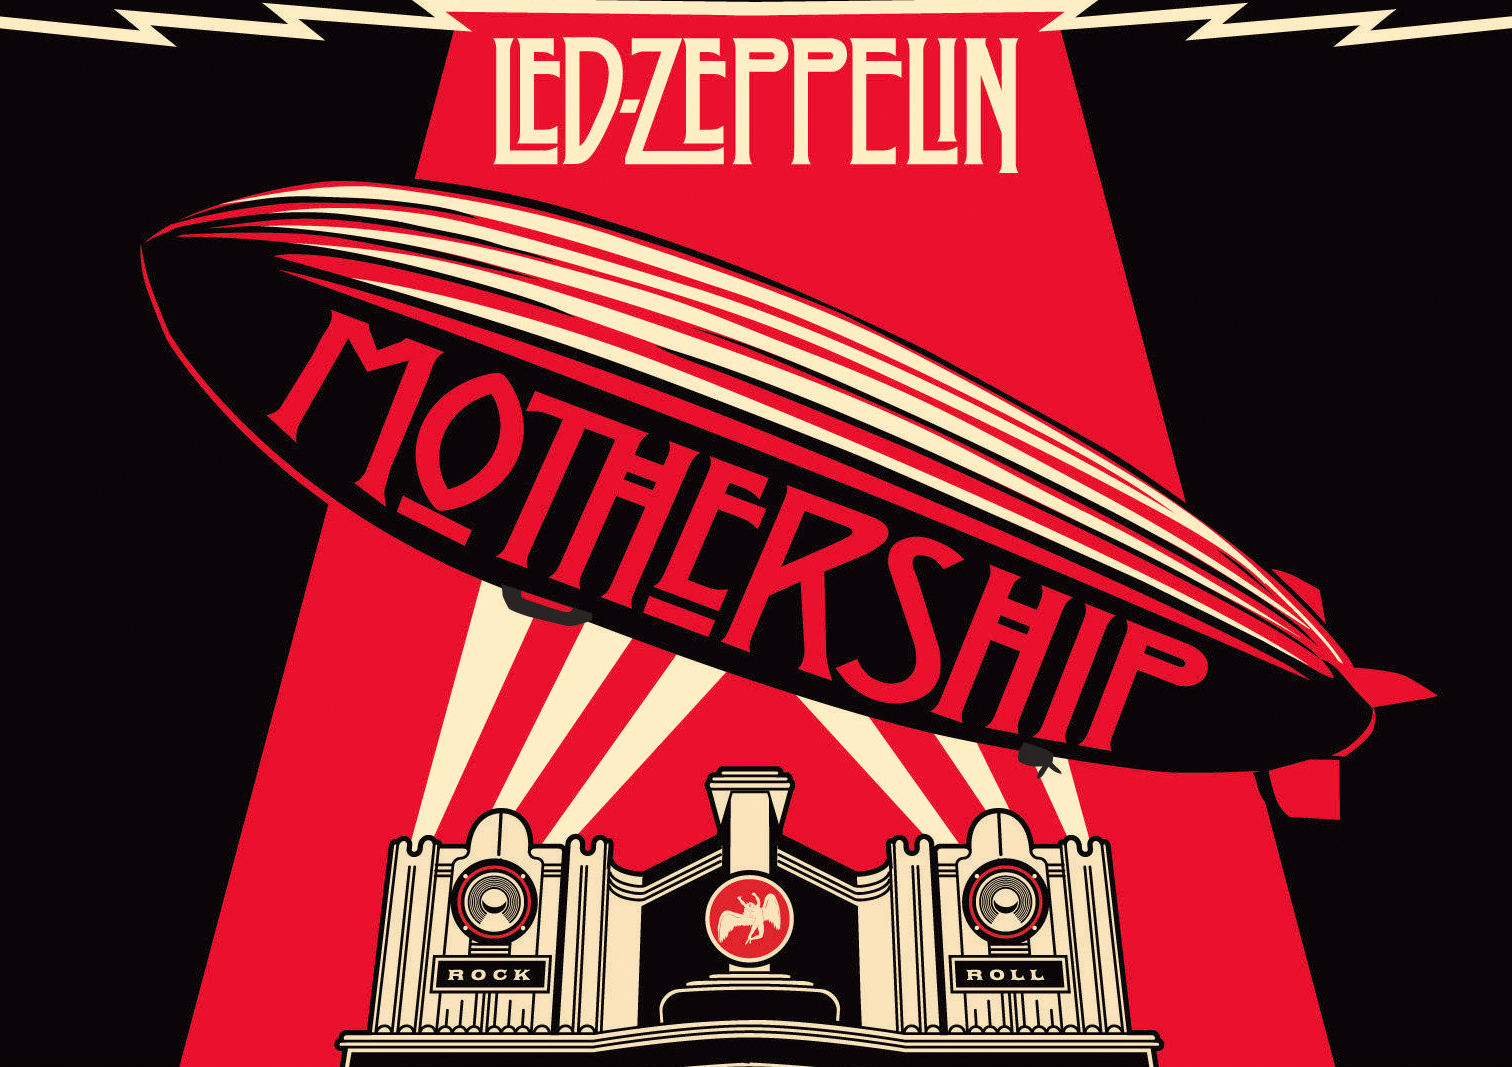 led zeppelin, hard rock, album cover, music 2160p